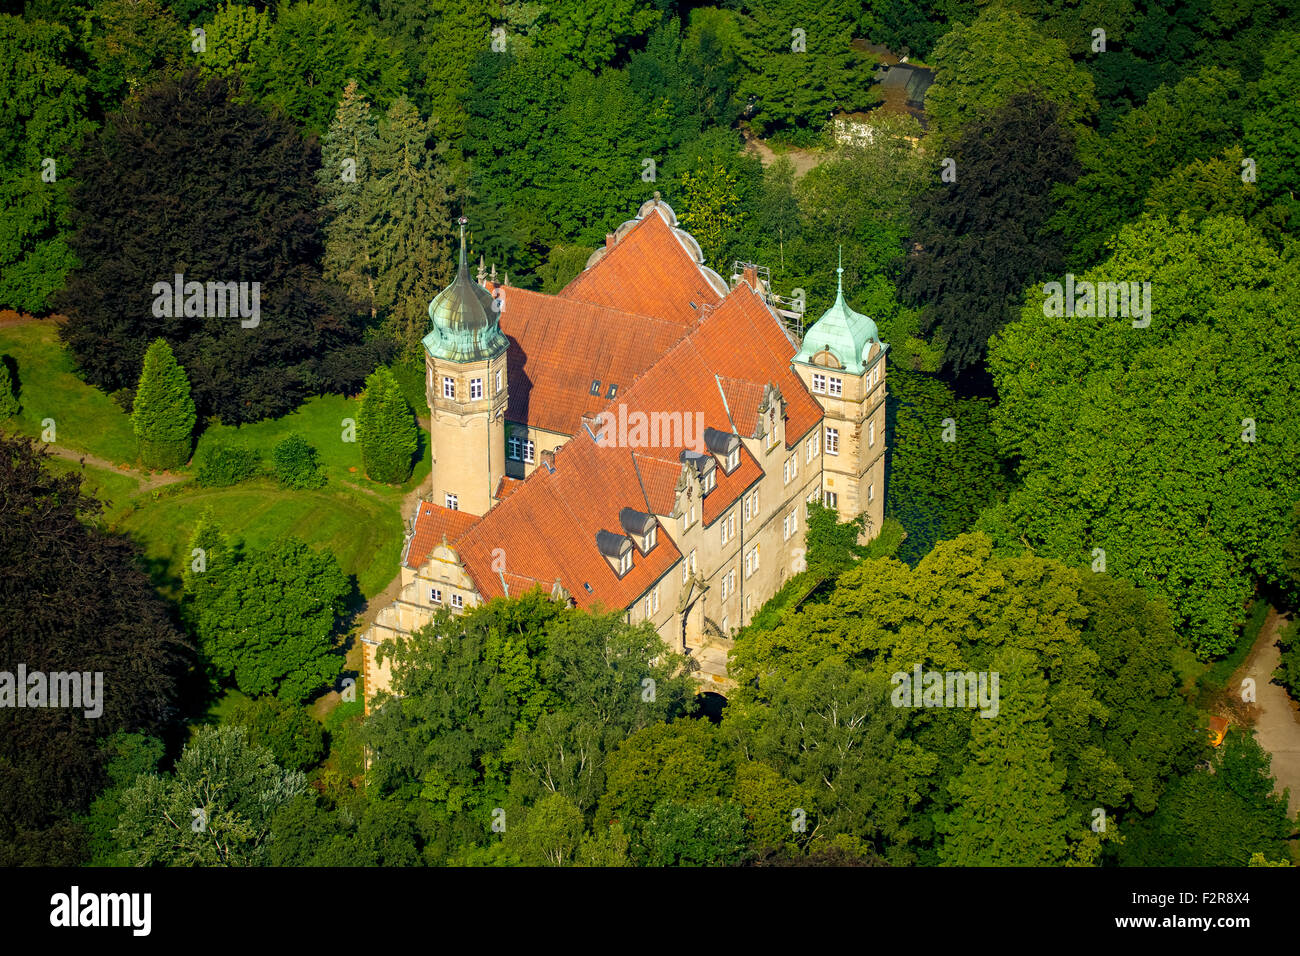 Uhlenburg Wasserschloss, château à douves, Löhne, Rhénanie du Nord-Westphalie, Allemagne Banque D'Images